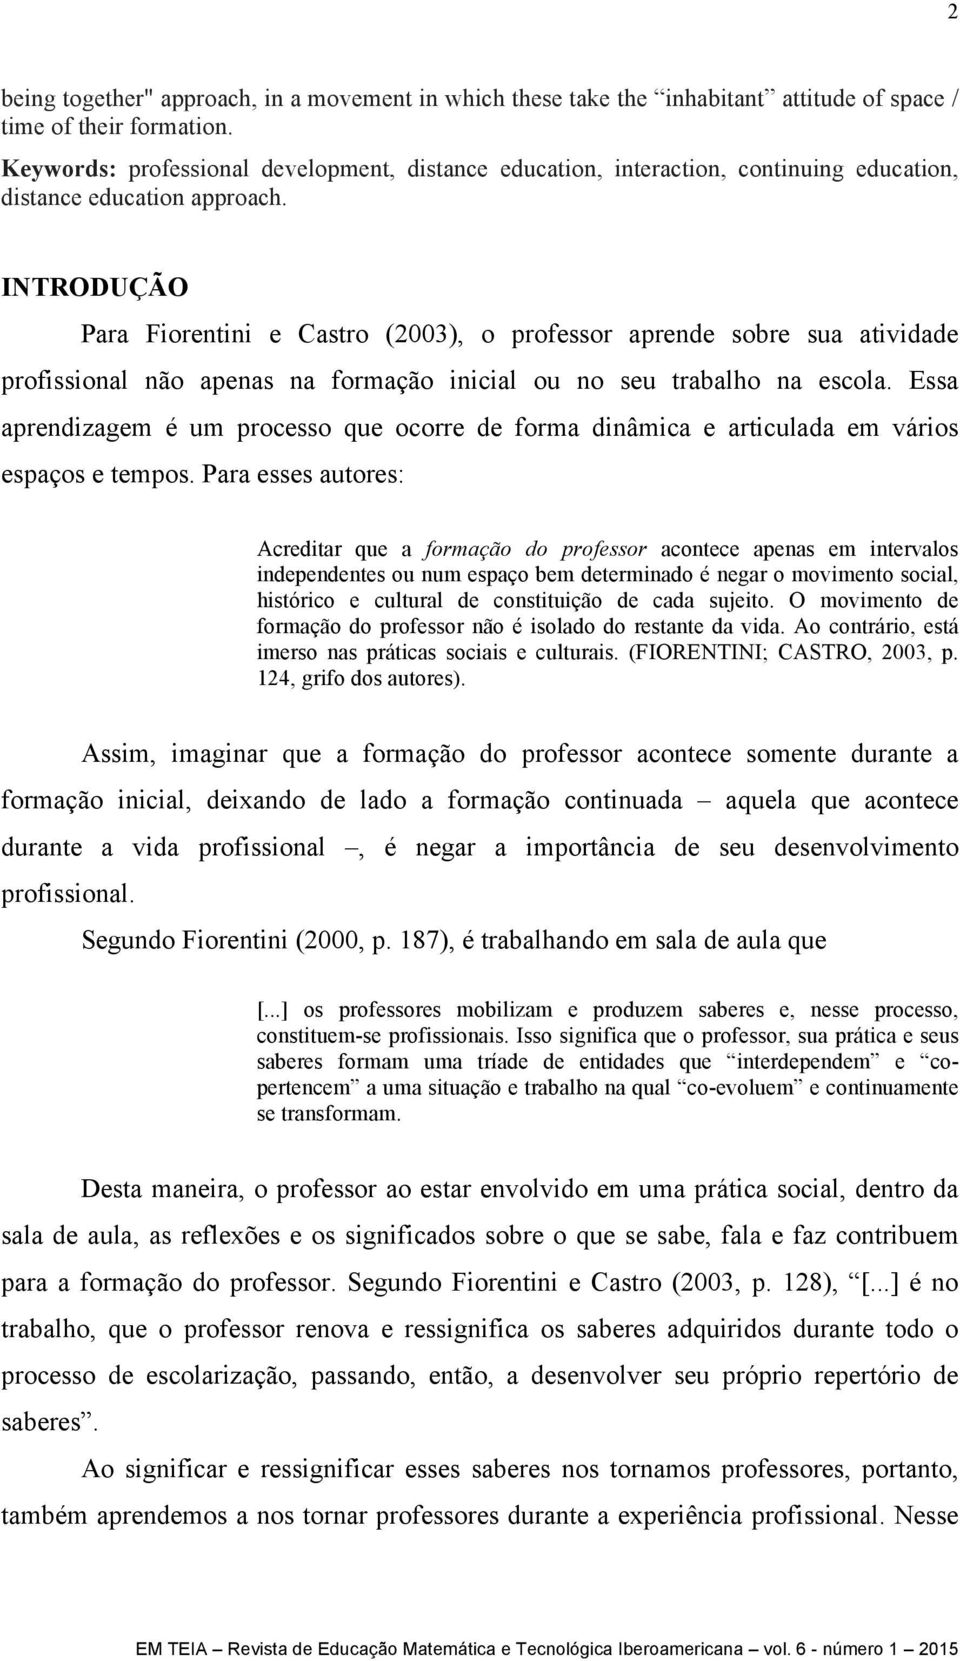 INTRODUÇÃO Para Fiorentini e Castro (2003), o professor aprende sobre sua atividade profissional não apenas na formação inicial ou no seu trabalho na escola.